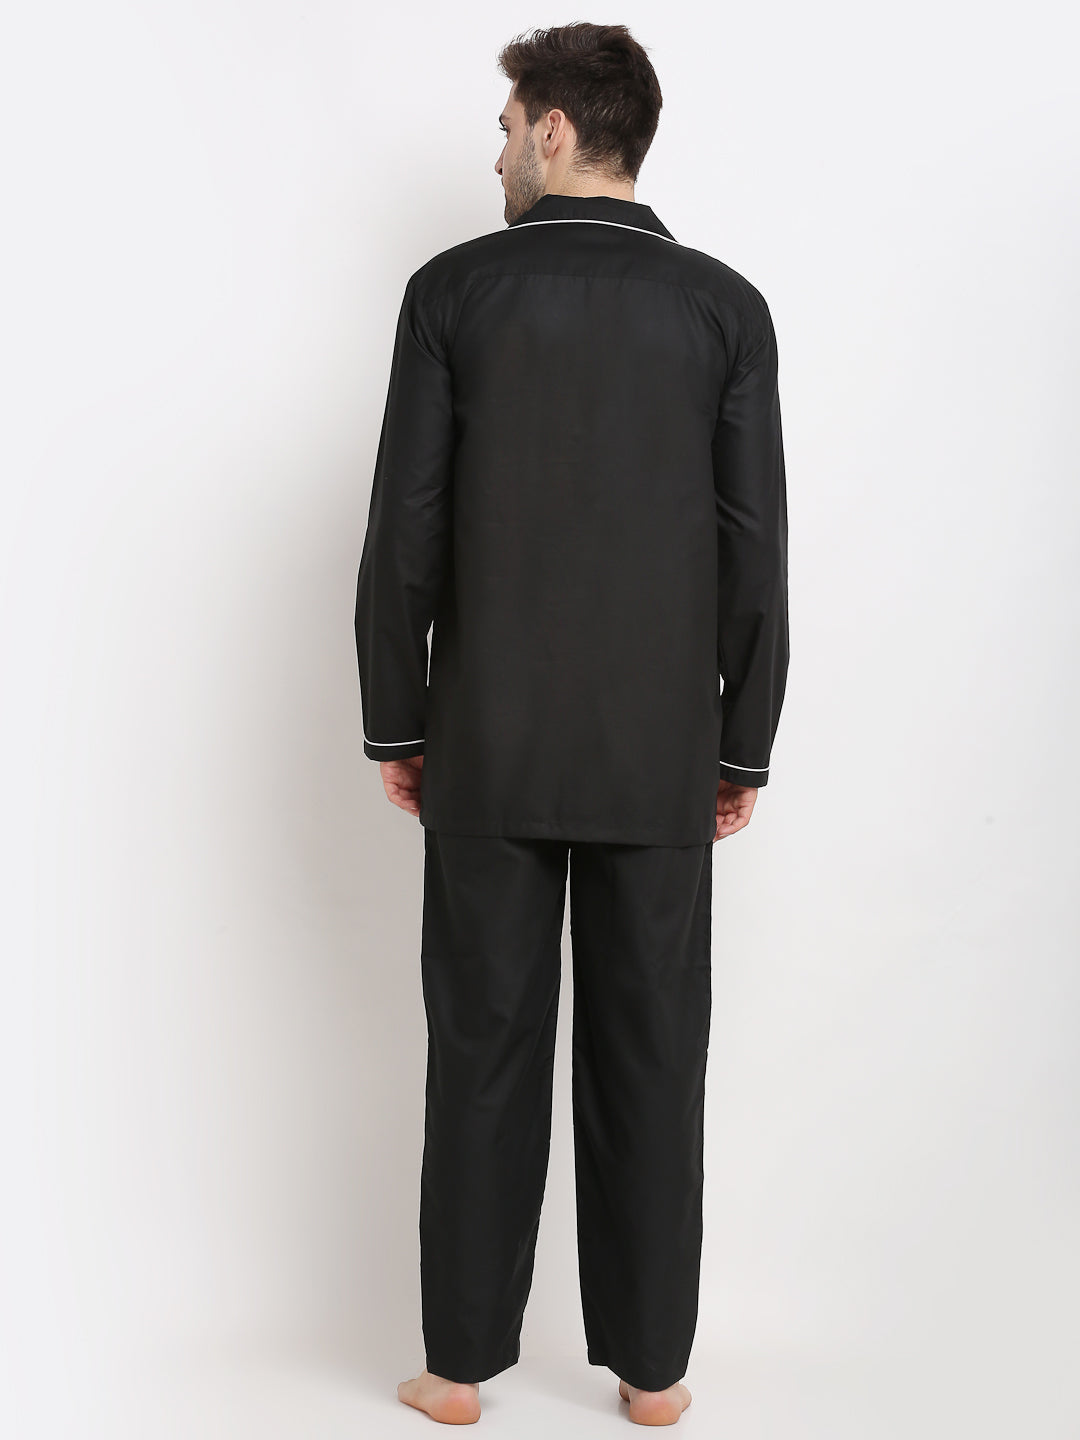 Men's Black Cotton Solid Night Suits ( GNS 003Black ) - Jainish